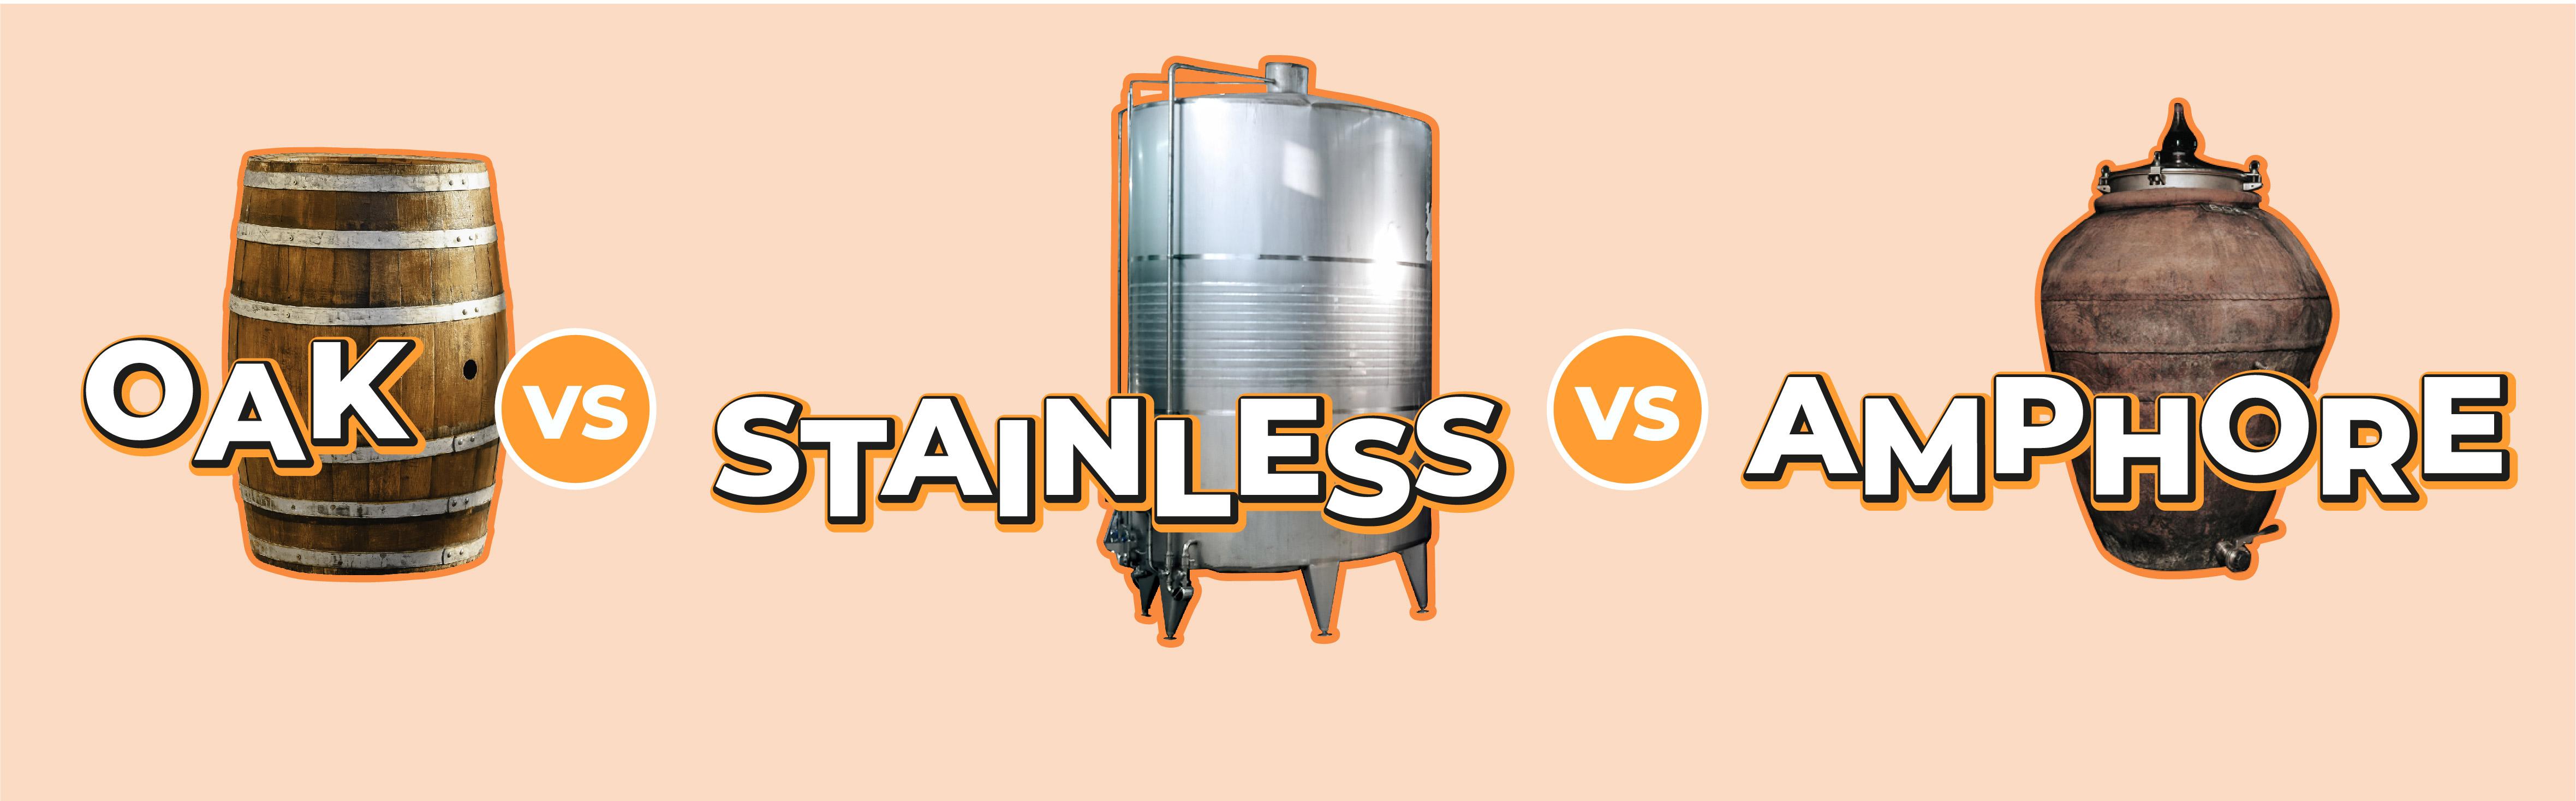 Oak VS Stainless Steel VS Amphore